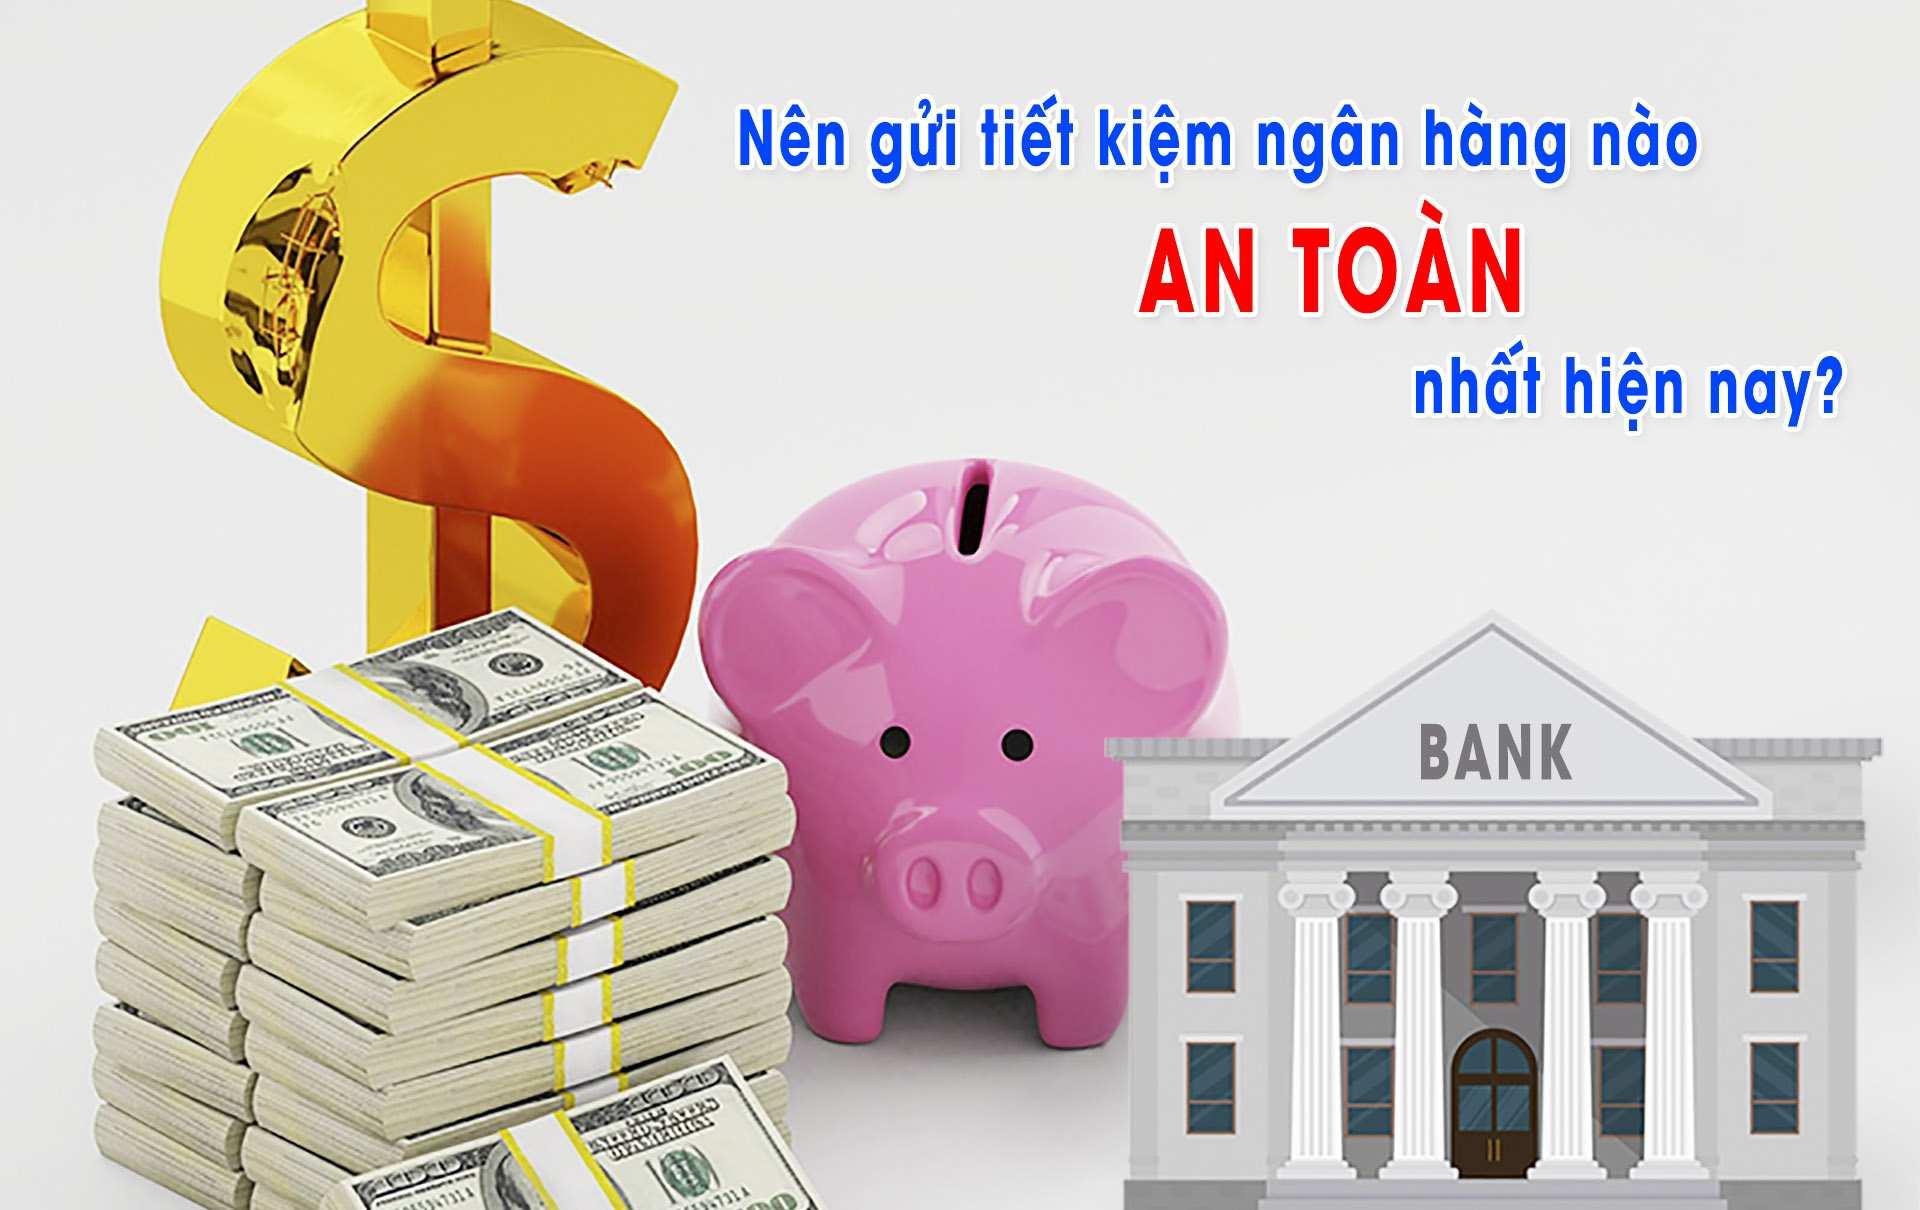 Gửi tiết kiệm ngân hàng nào an toàn nhất?